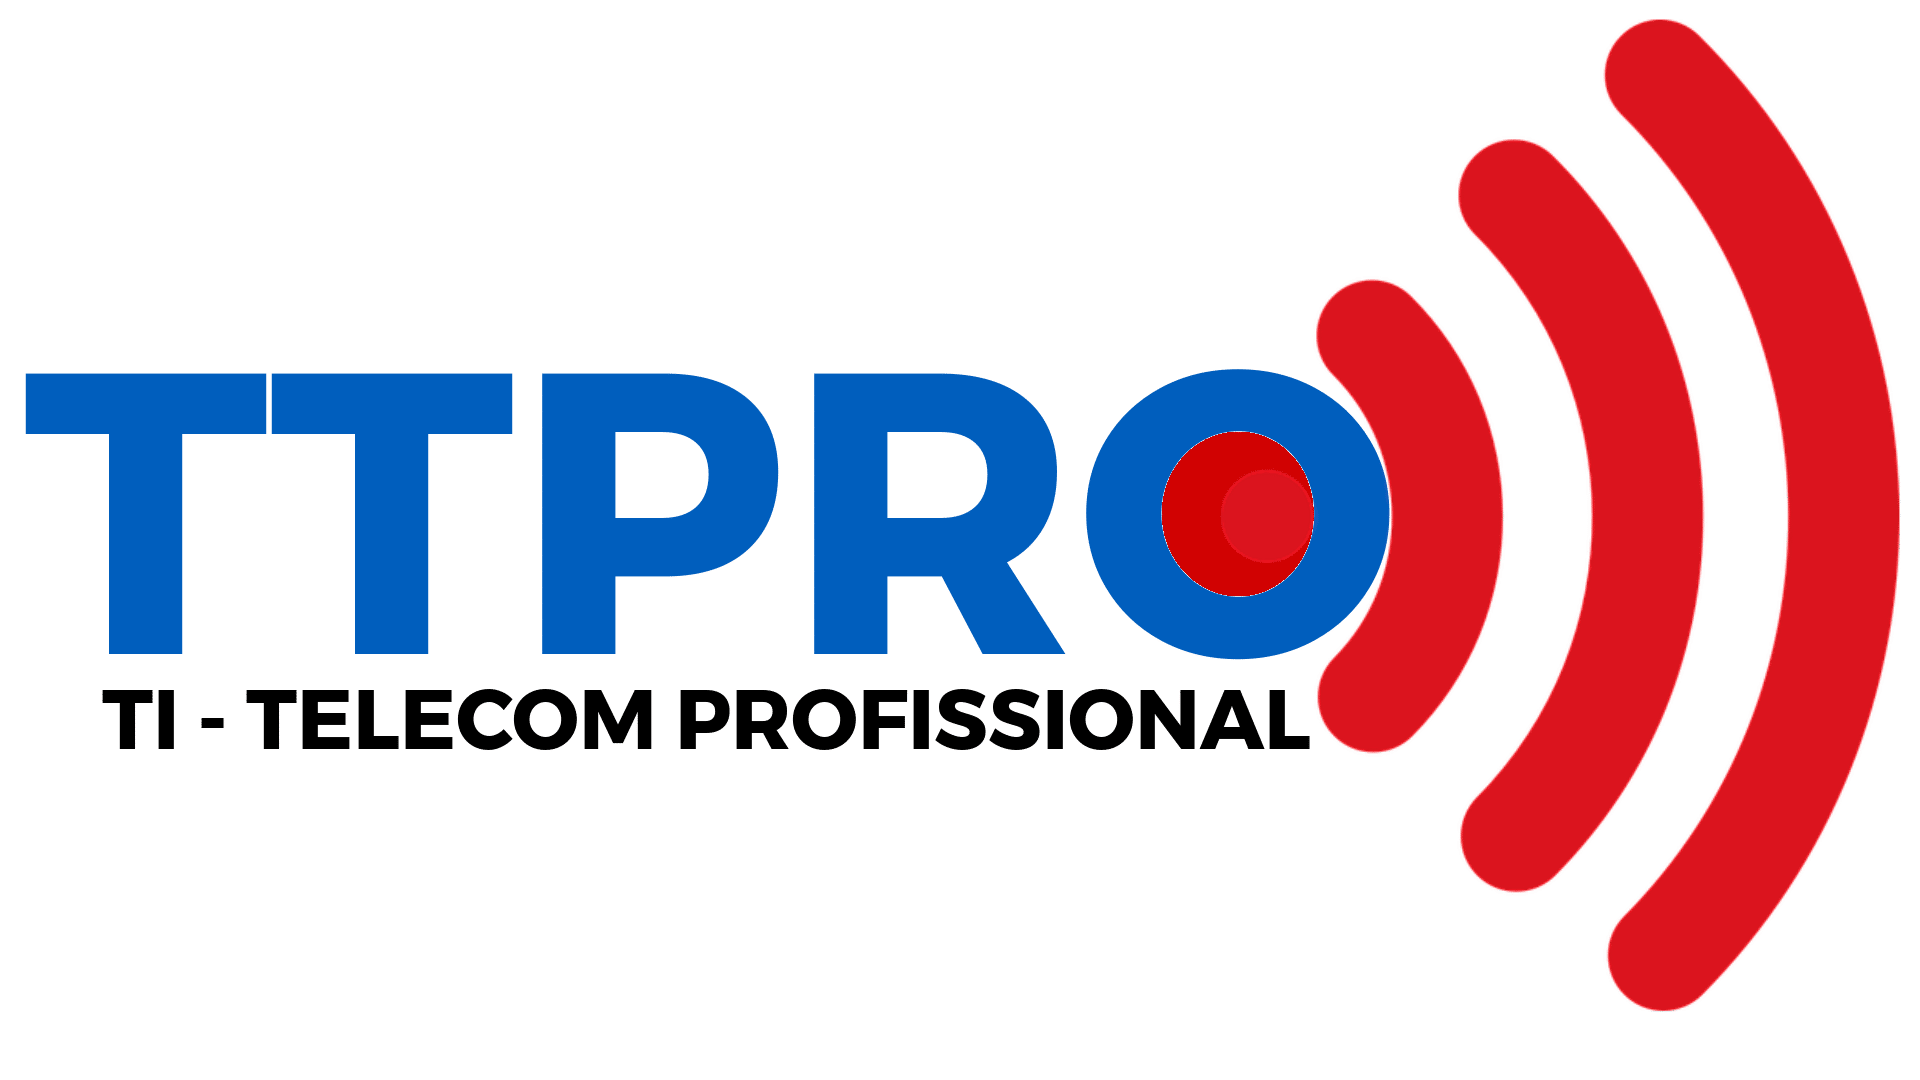 TTPRO - TI e Telecom Profissional